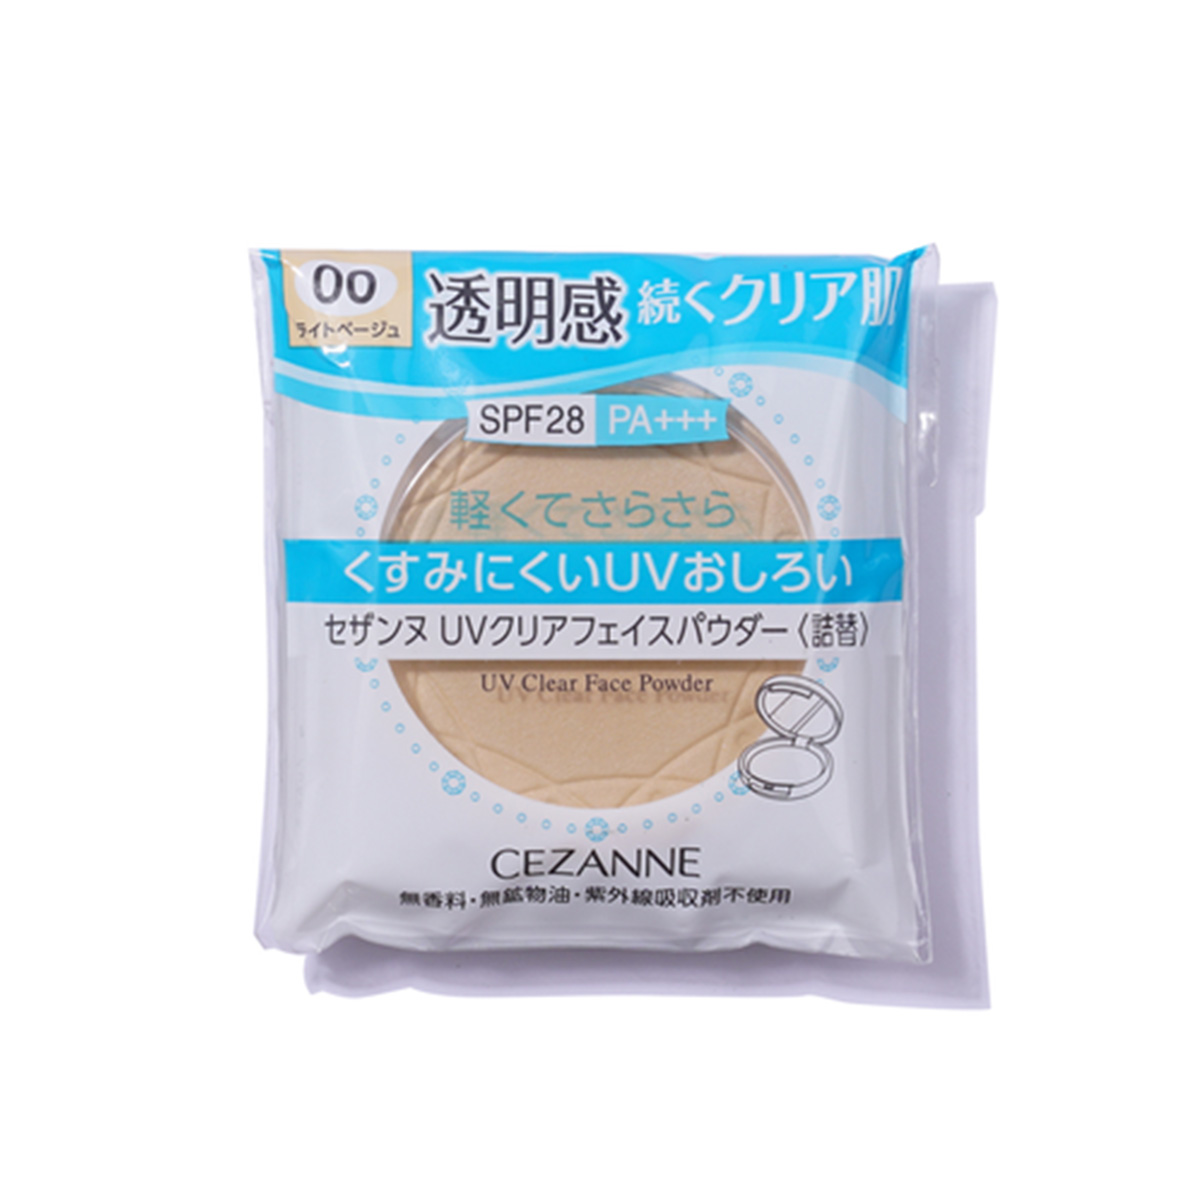 เครื่องสำอางญี่ปุ่น Cezanne UV Clear Face Powder แป้งฝุ่นอัดแข็งจากญี่ปุ่น